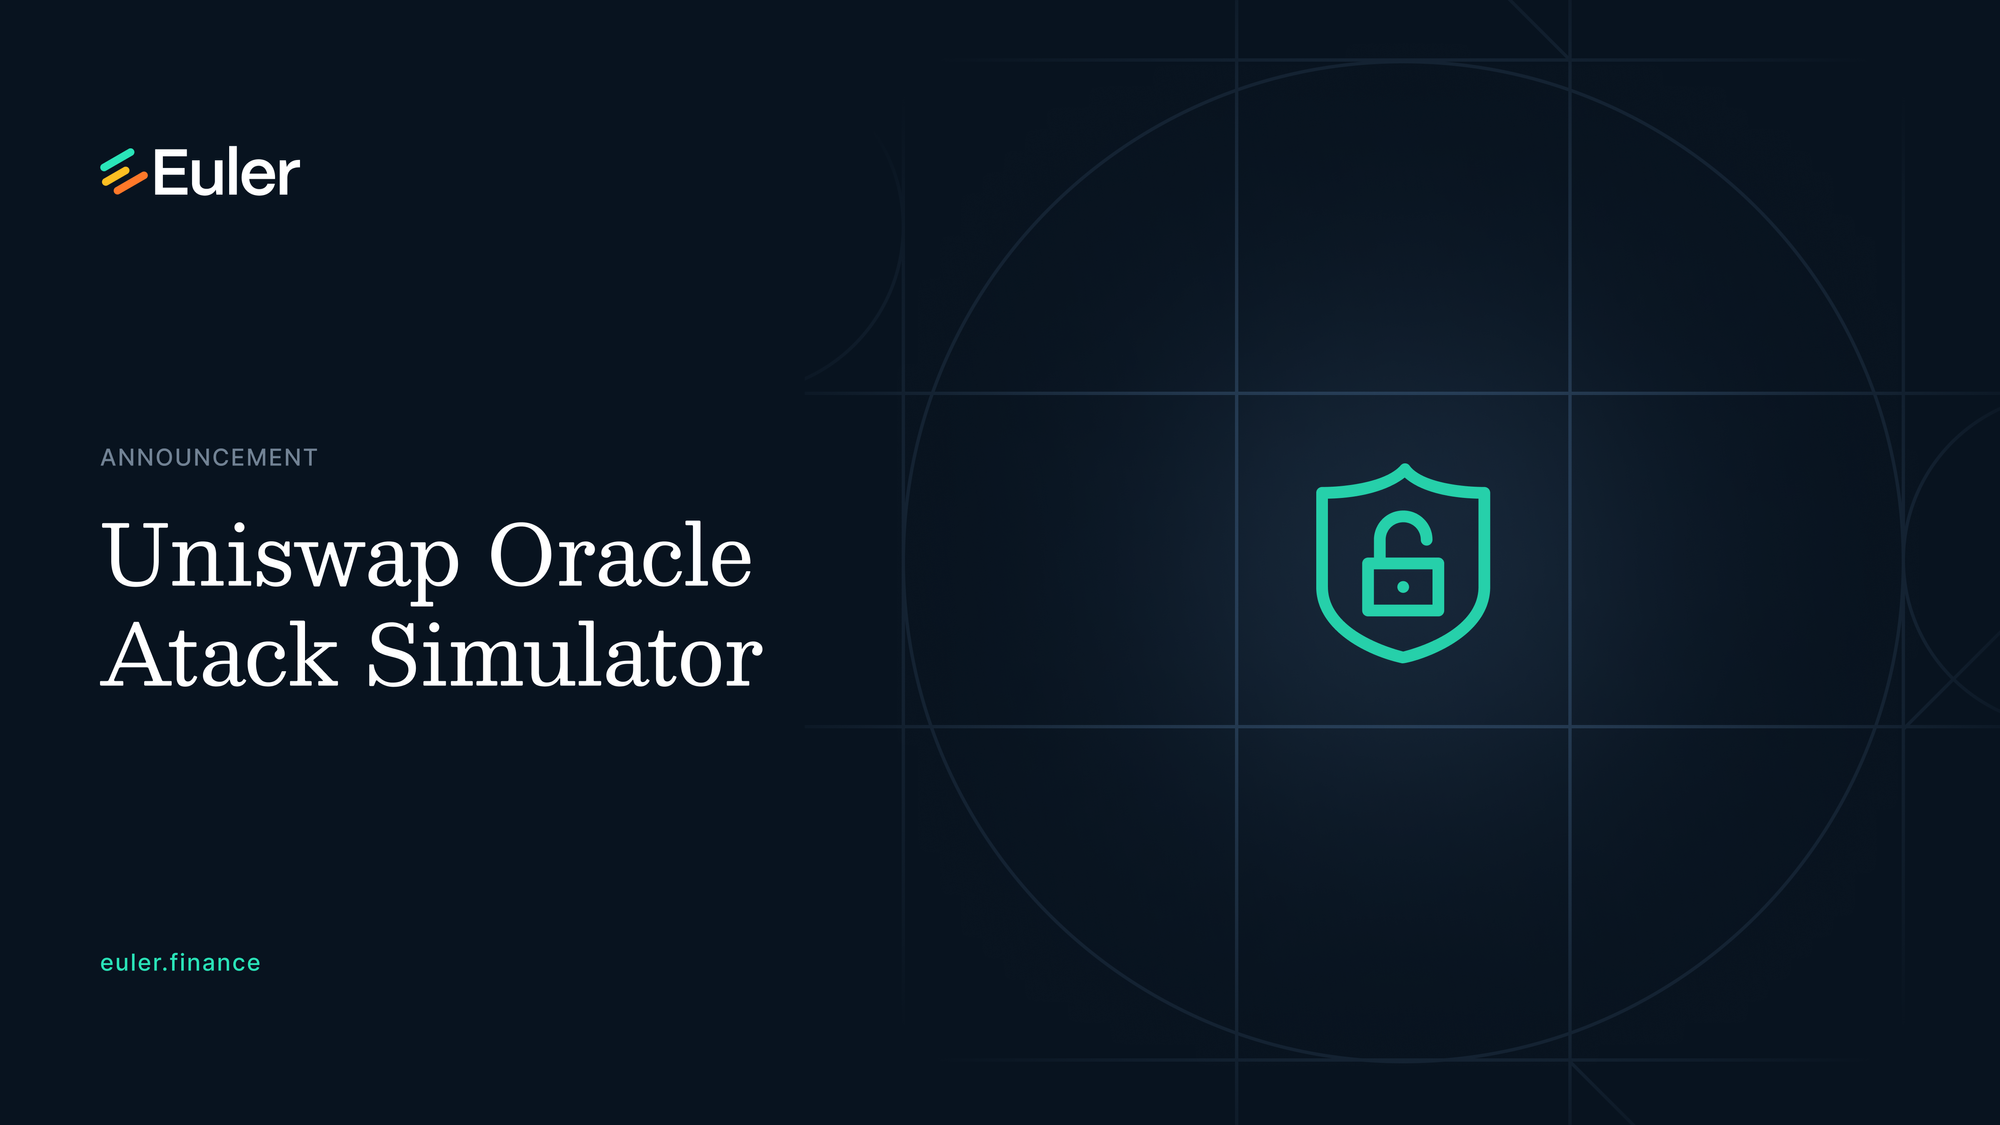 Uniswap Oracle Attack Simulator